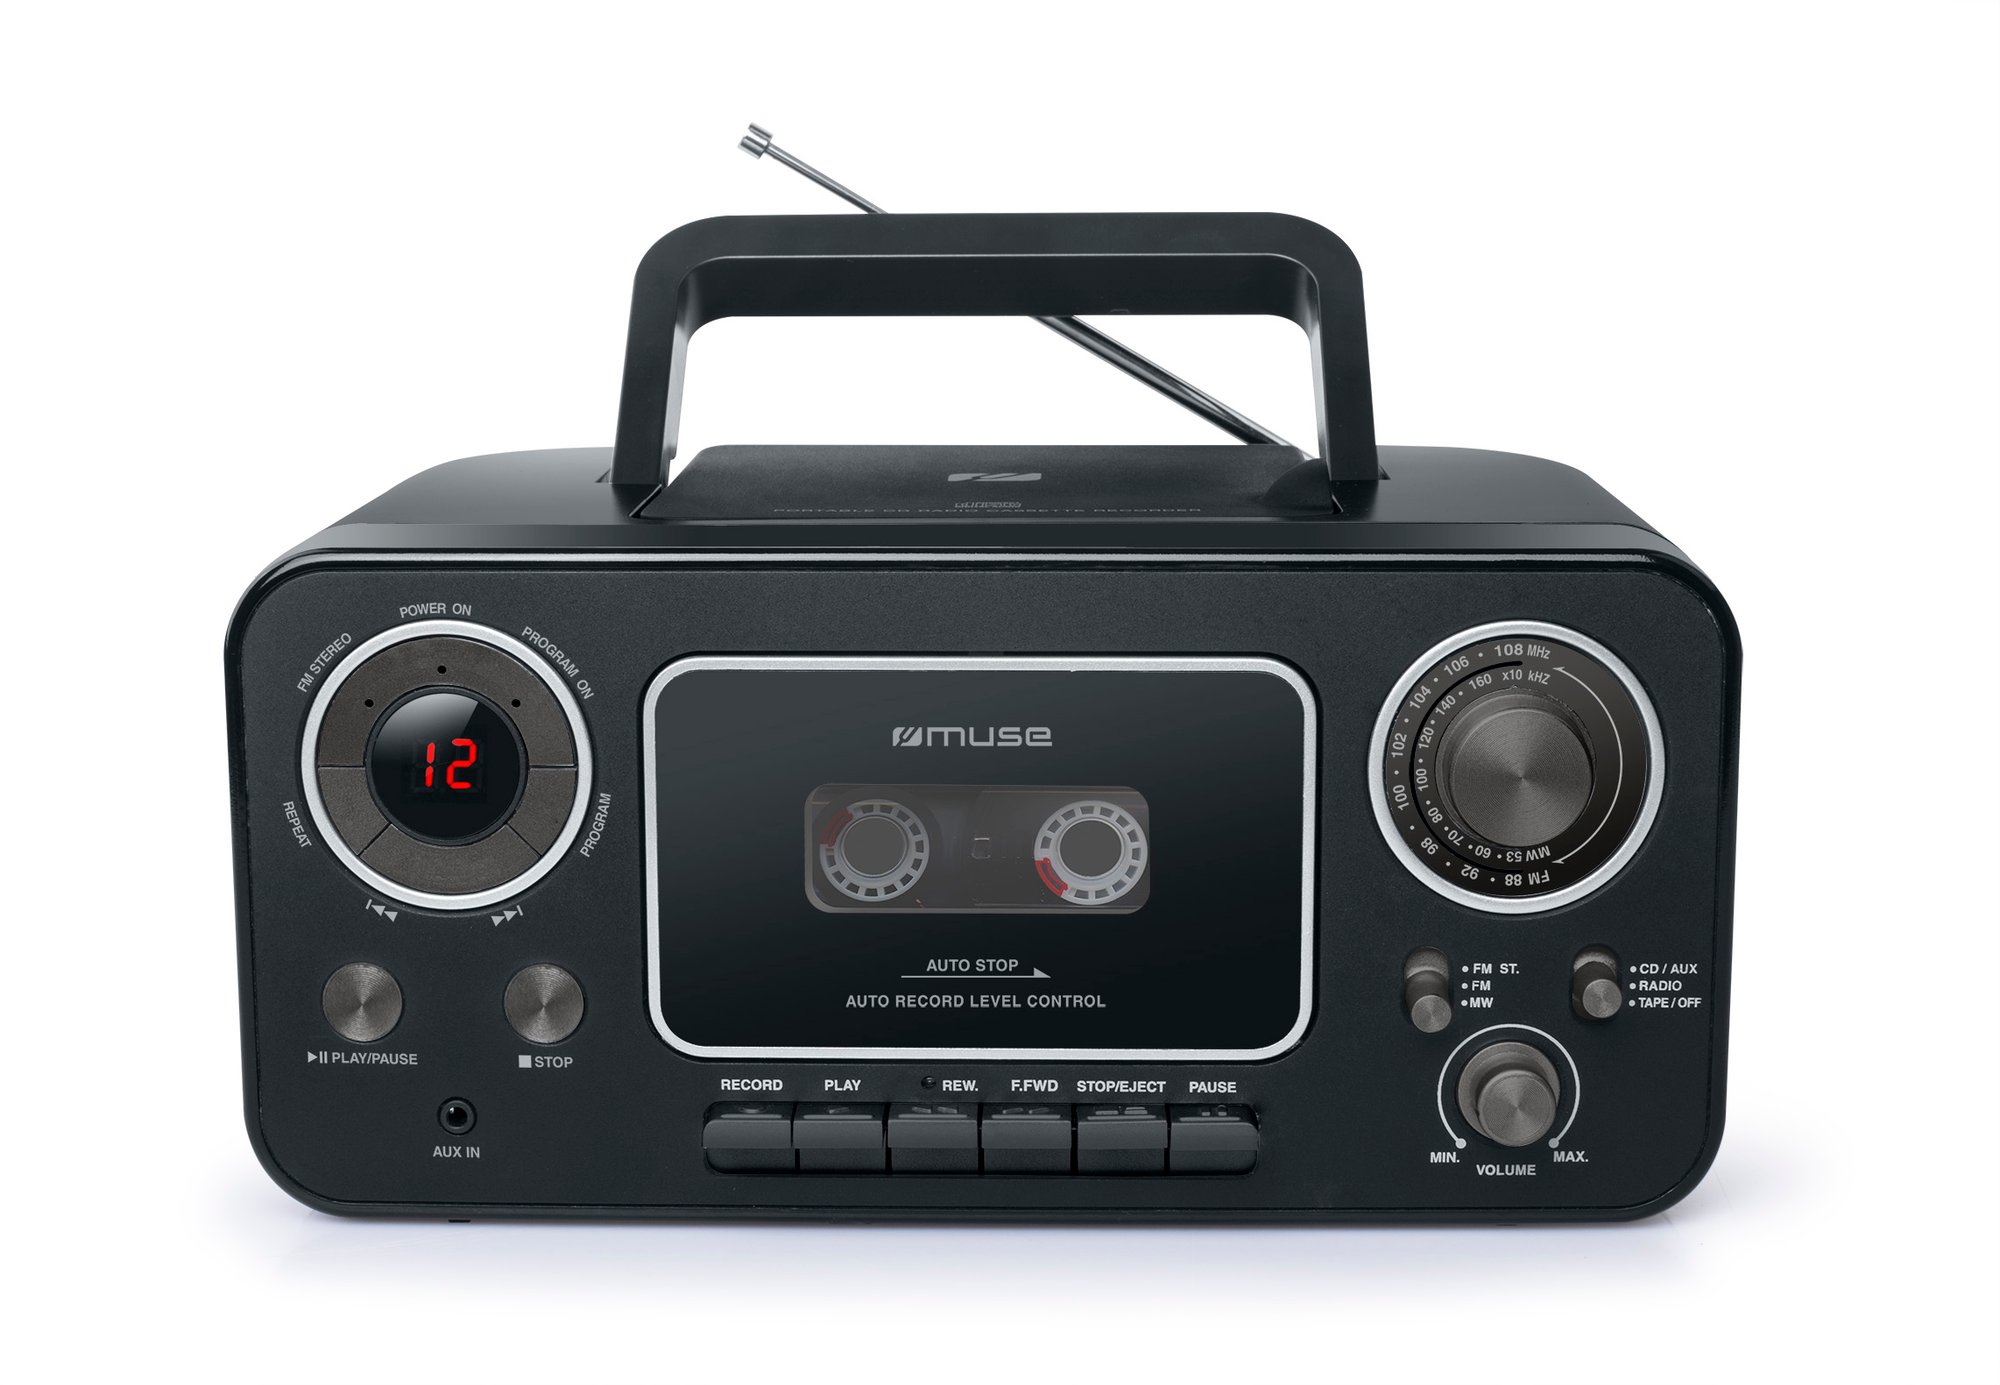 Muse M-182 RD er en berømt radiokassetteoptager. M-182 er en retro-radio med CD-afspiller og med en dejlig kombination af funktioner. Lyt til kassettebånd, lyt til dine CD'er eller hør radio. ‒ WATTOO.DK